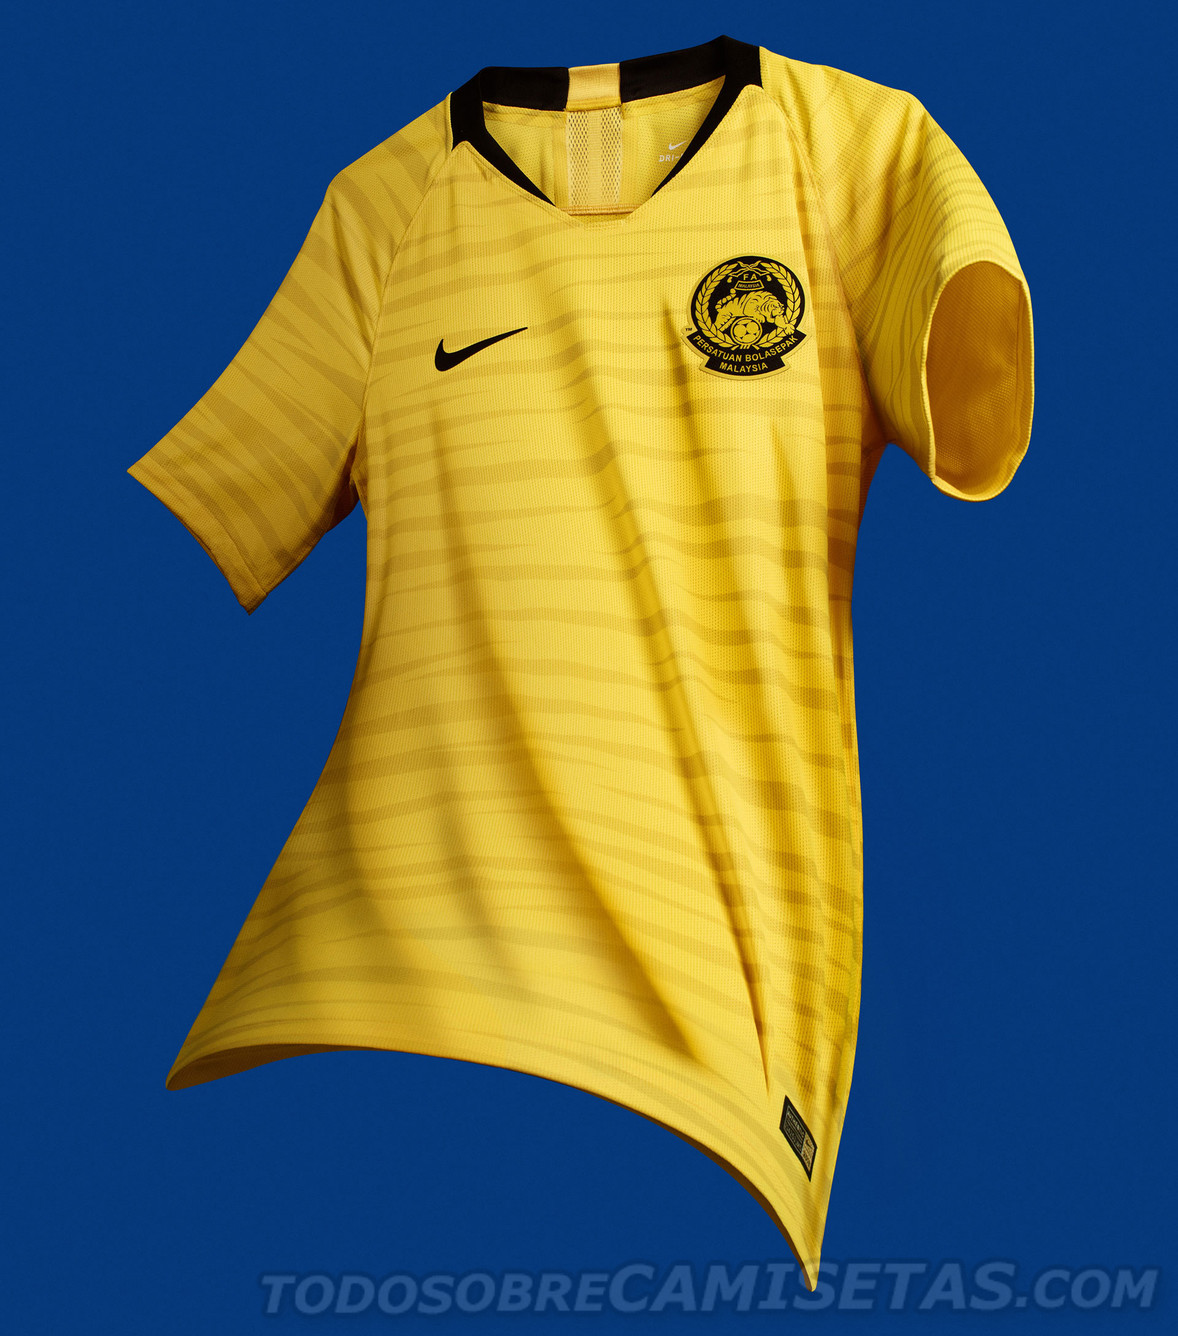 Malaysia 2018 Nike Kits